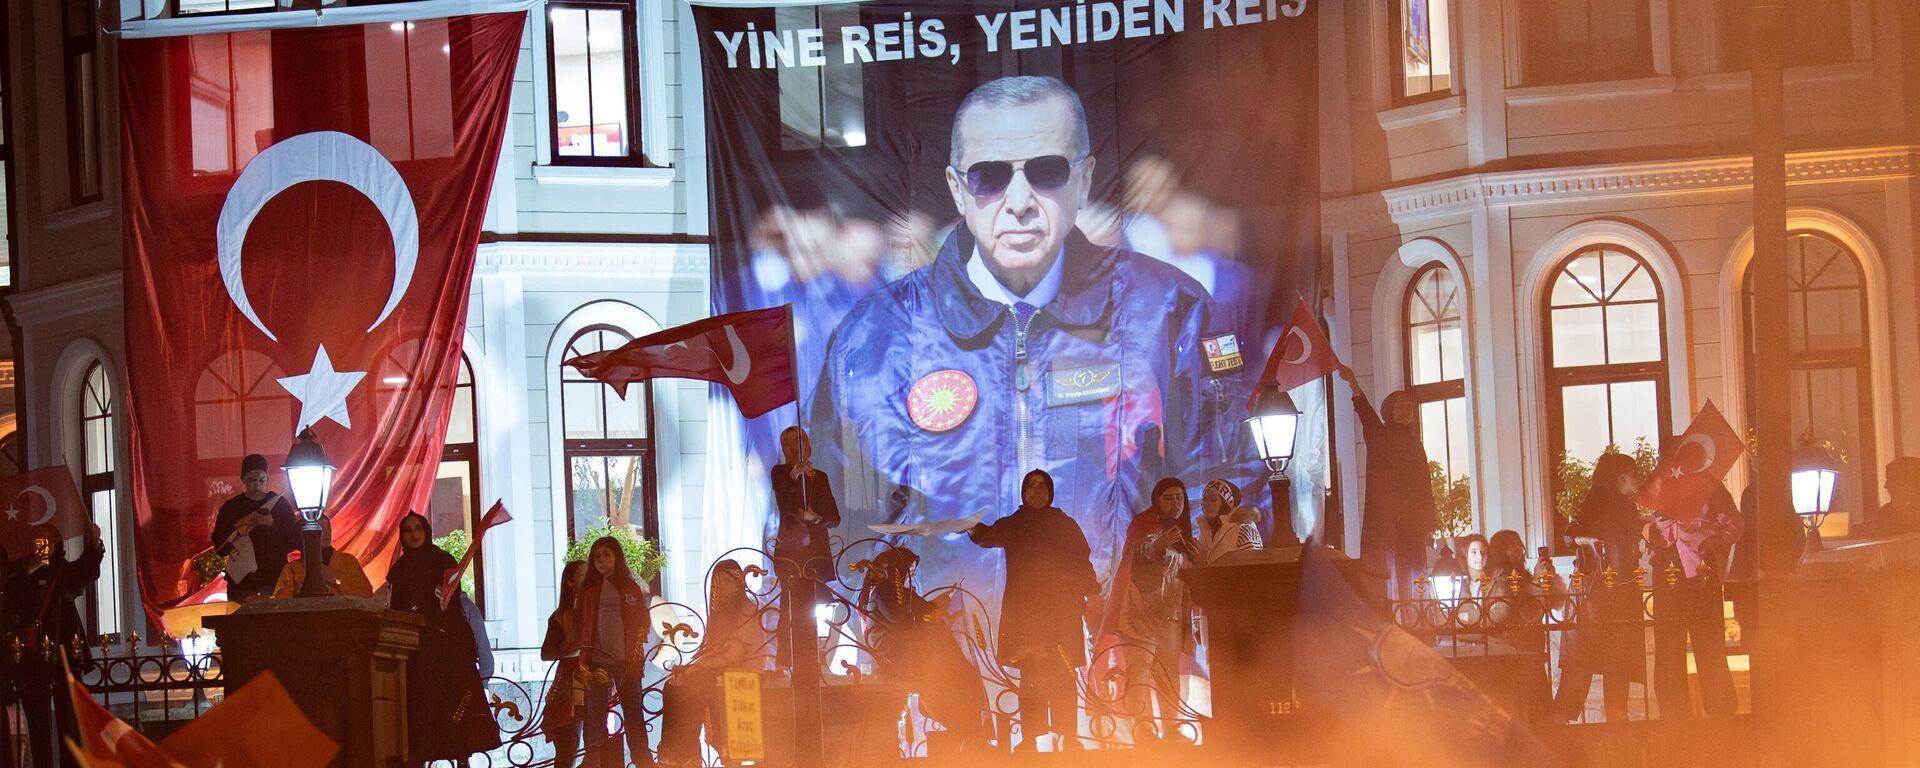 Simpatizantes del presidente turco Recep Tayyip Erdogan celebran en Estambul la reelección del mandatario - Sputnik Mundo, 1920, 28.05.2023